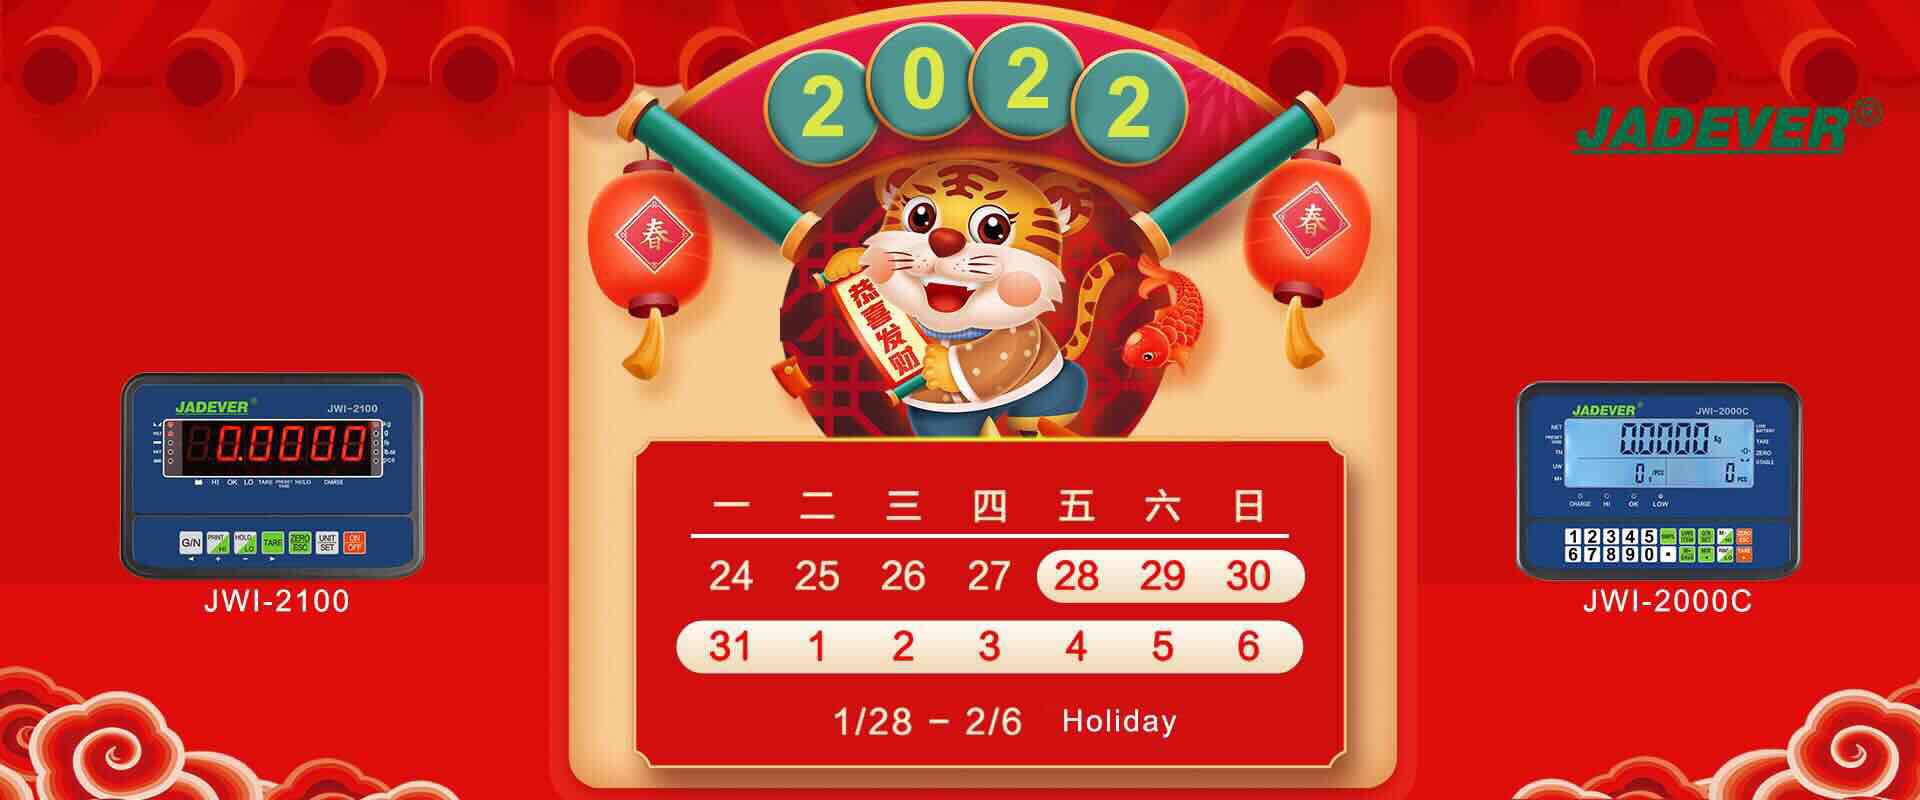 aviso de vacaciones - año nuevo lunar chino 2022